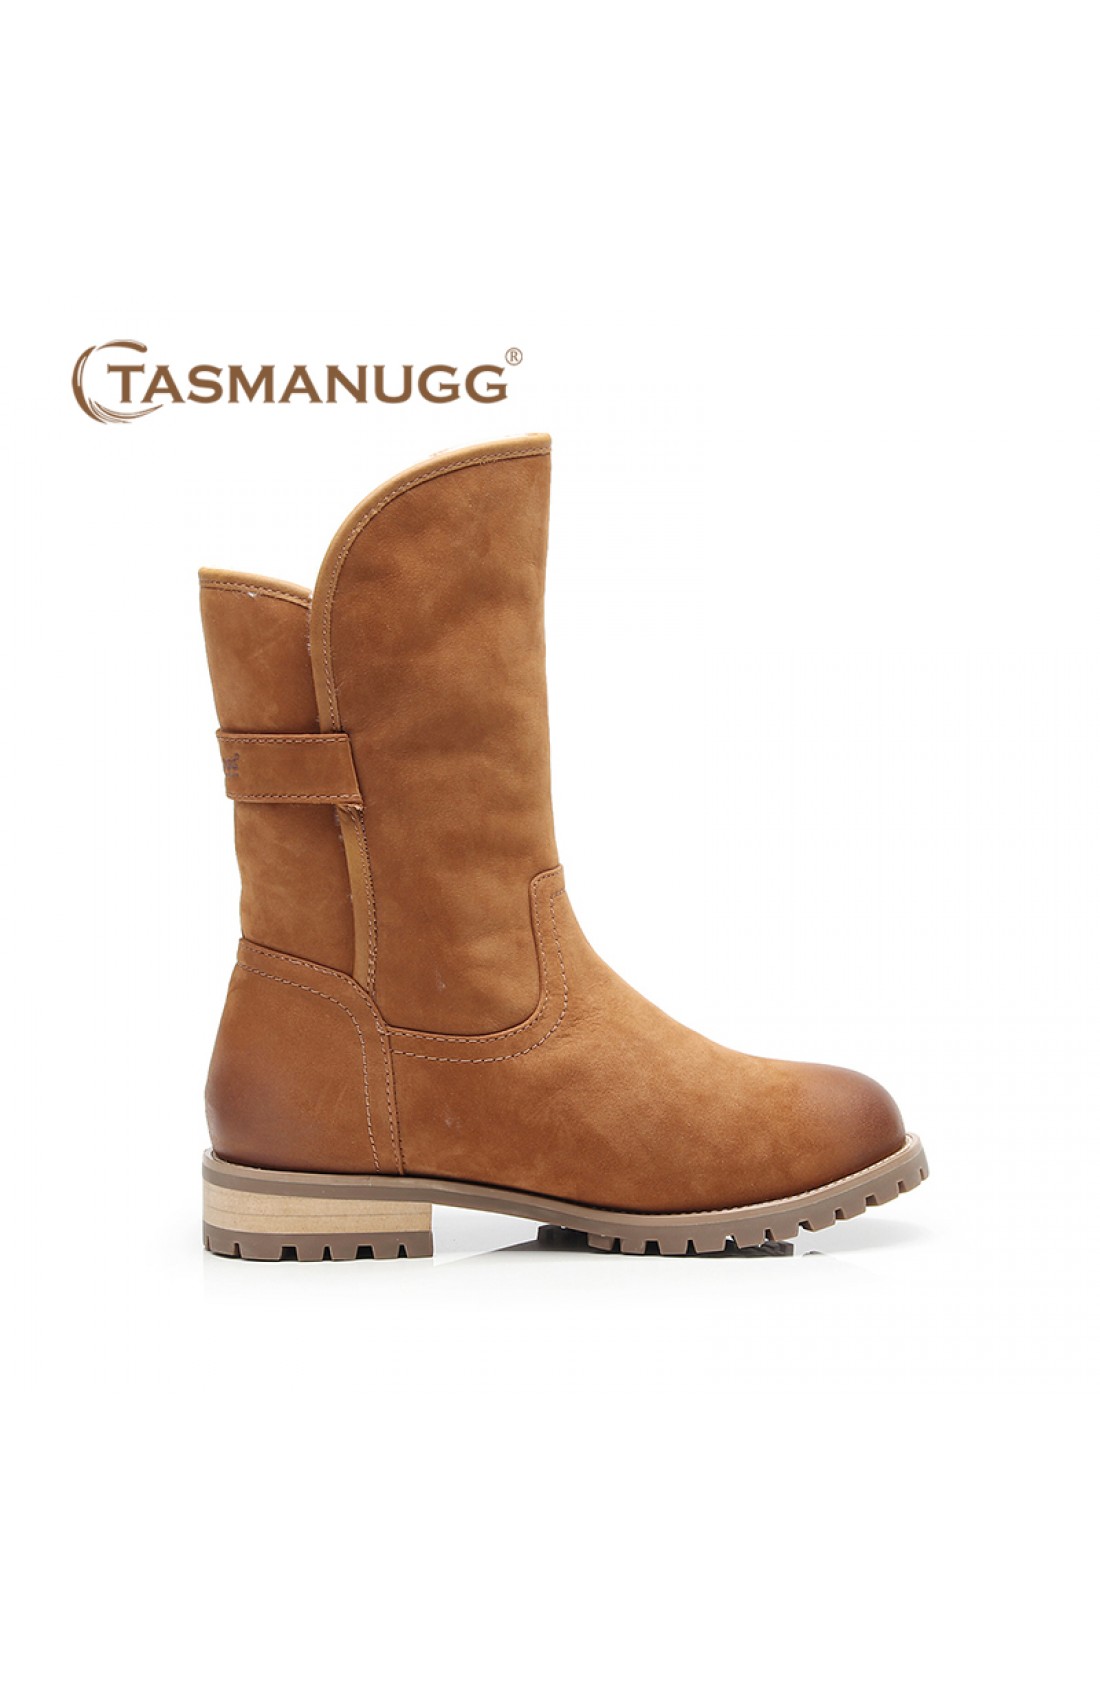 tasman ugg boots